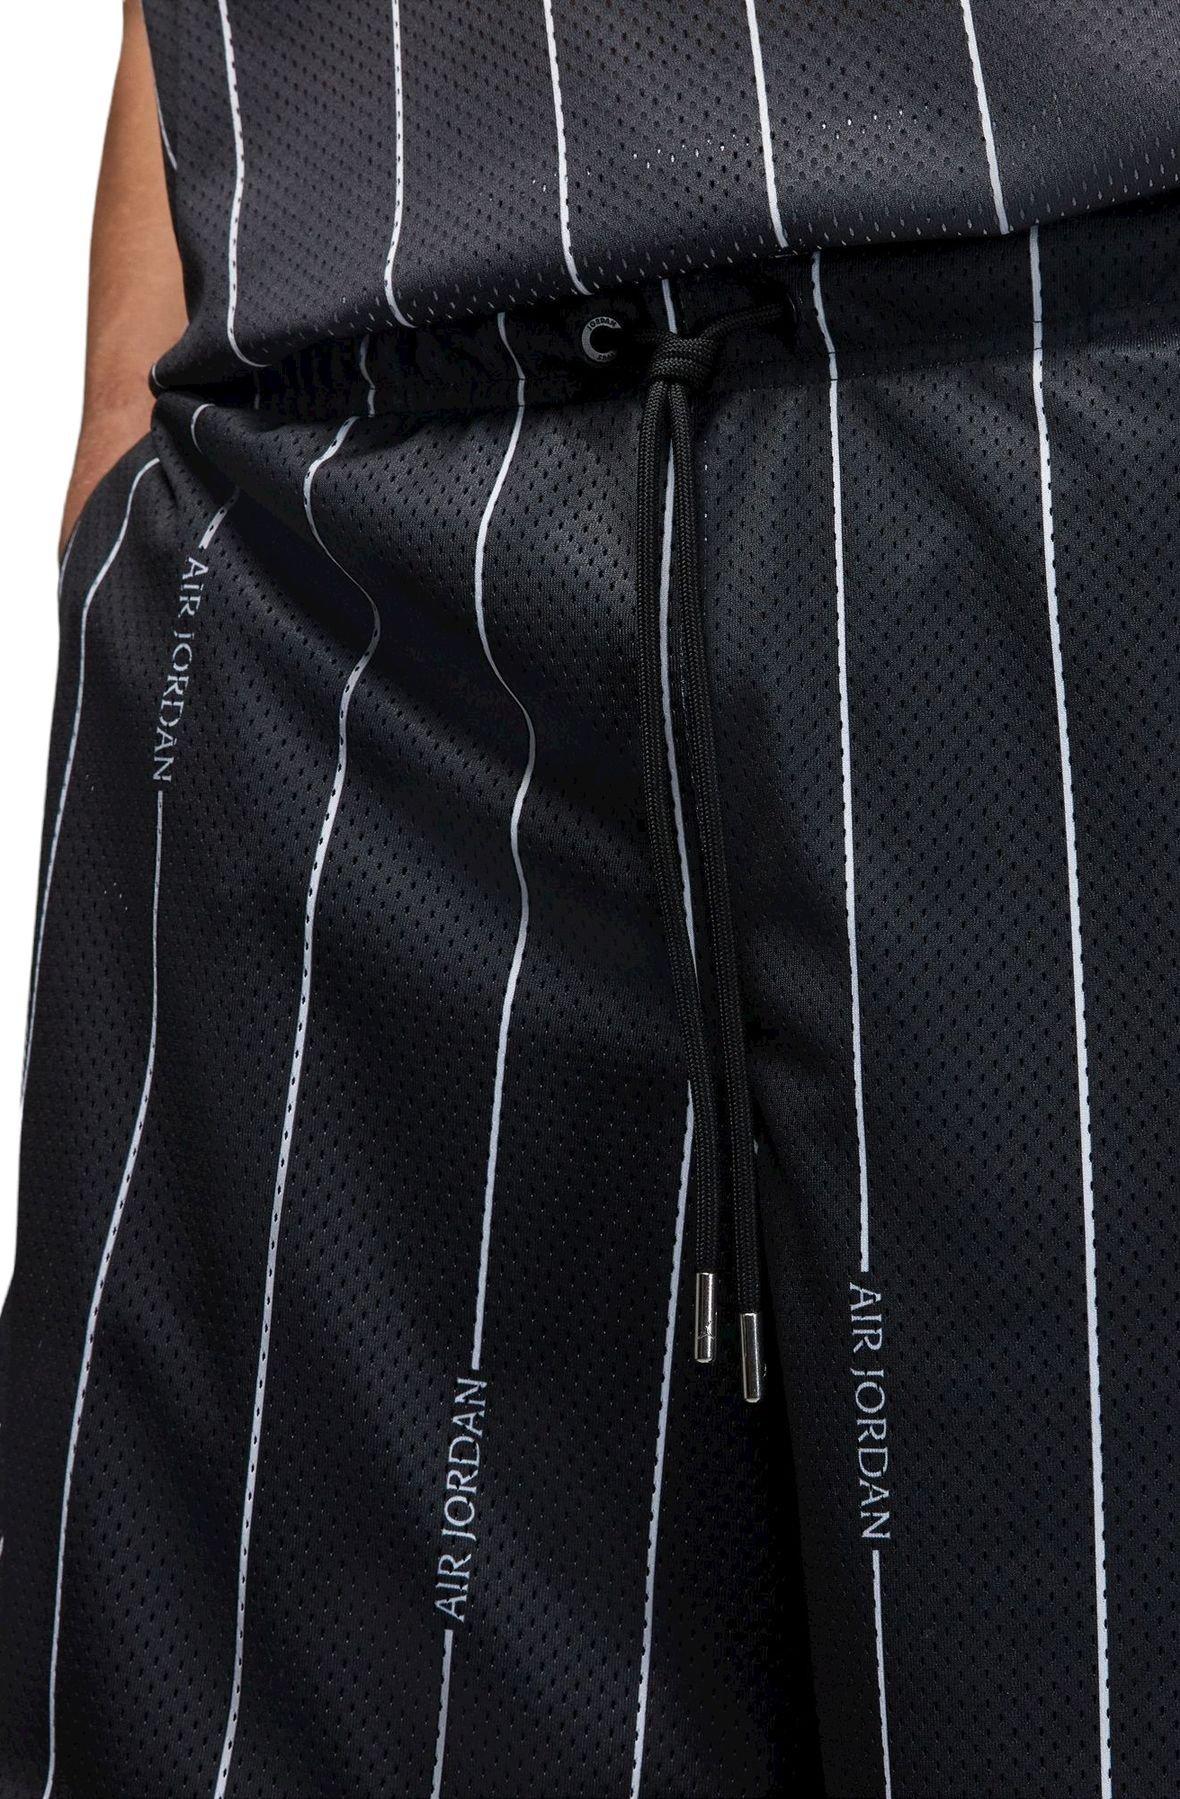 Jordan Men's Essentials All Over Print Pinstripe Short-Black